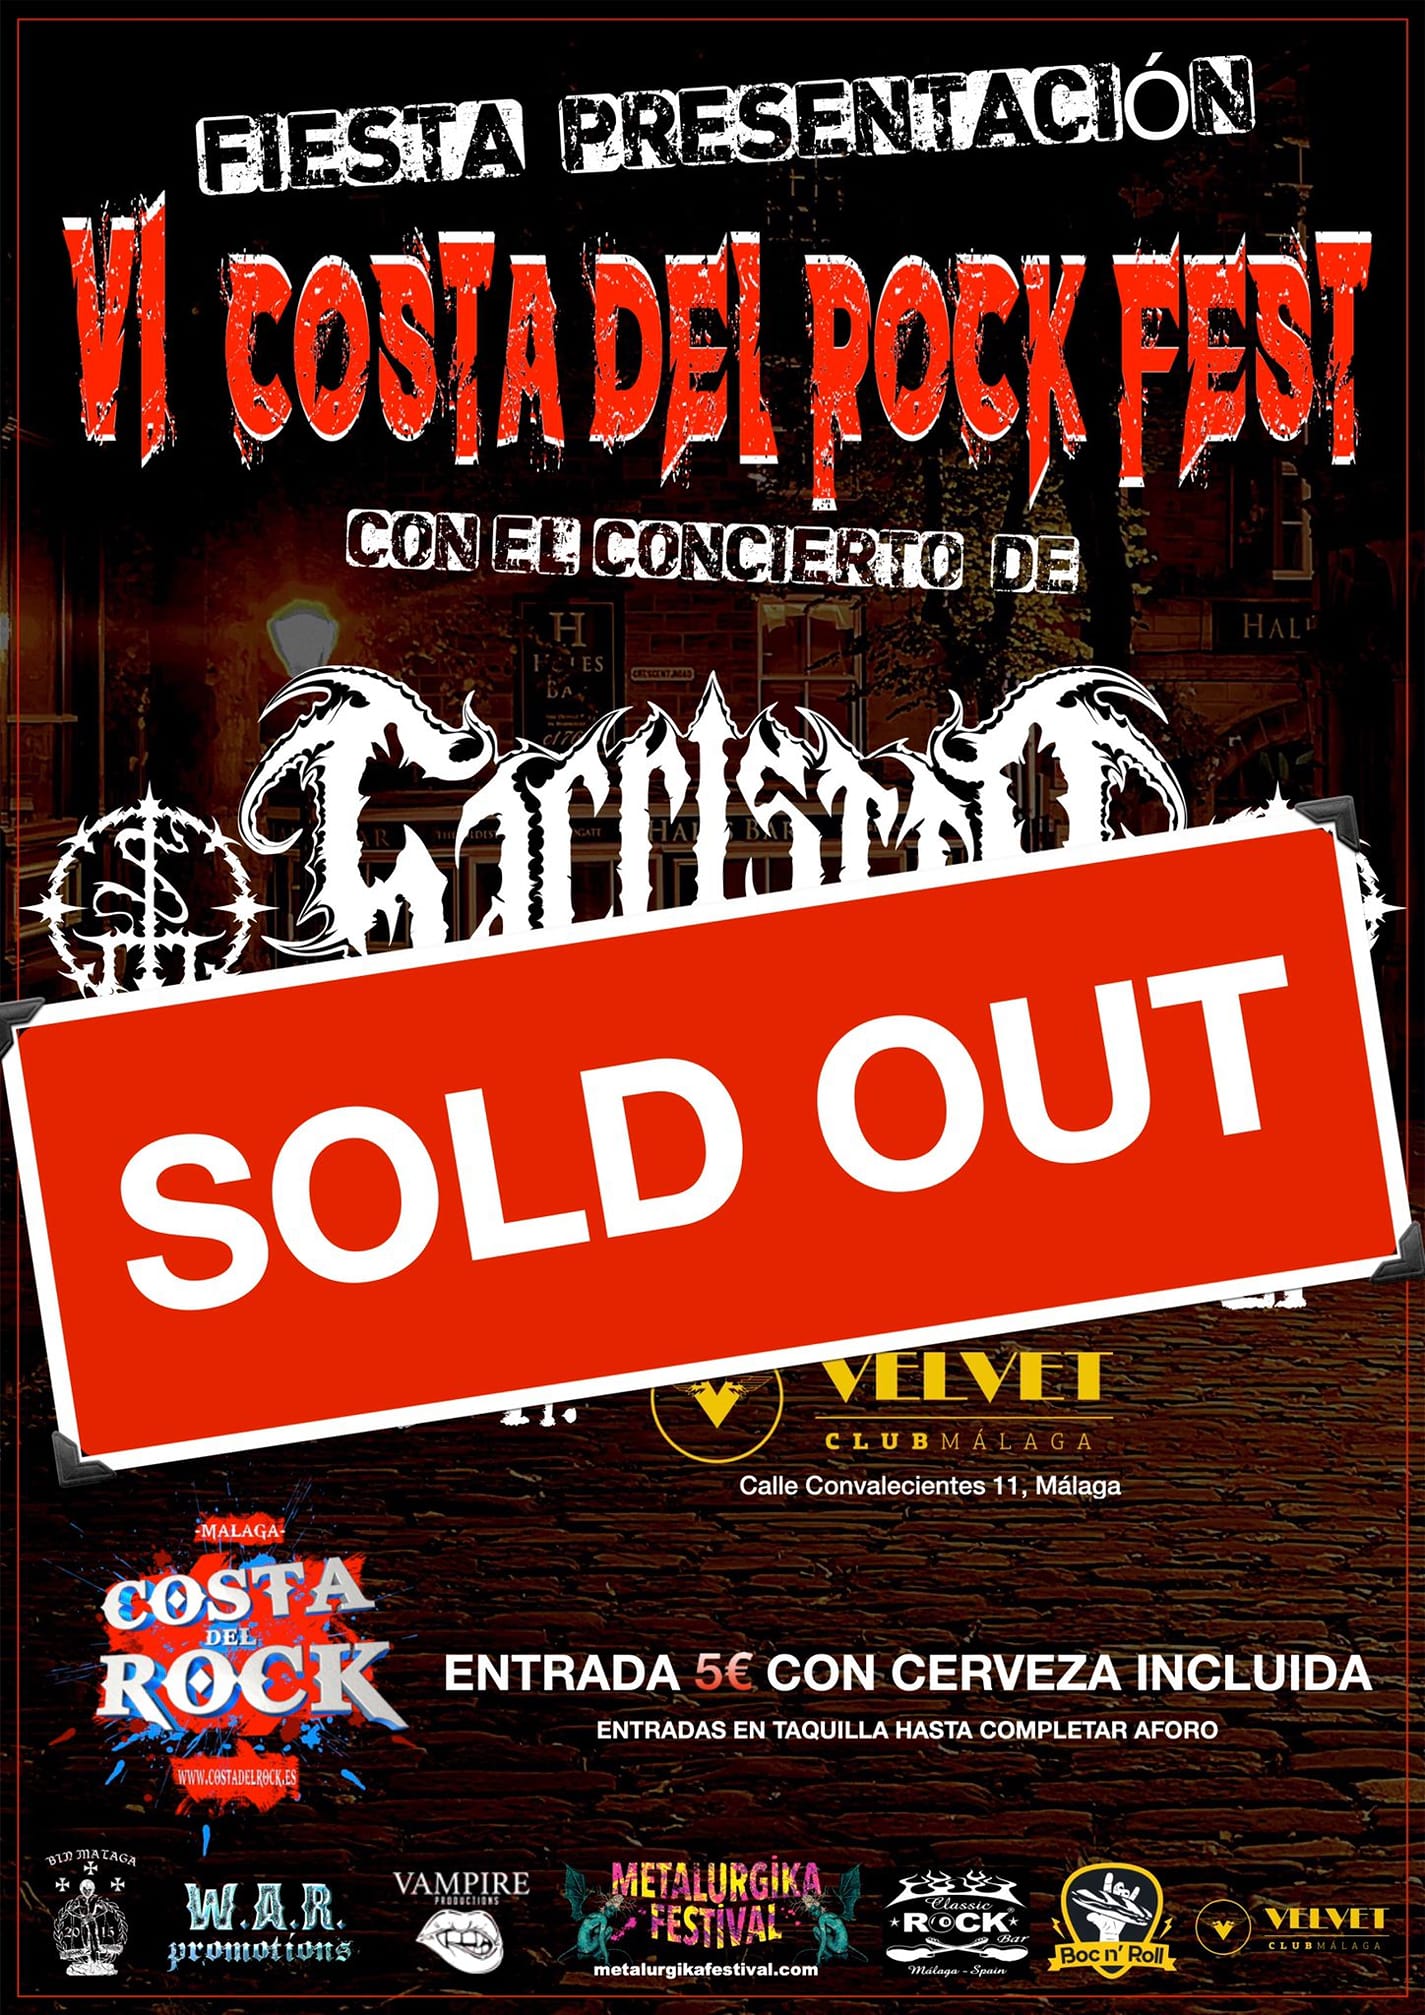 VI Costa Del Rock Fest: Sold Out en su fiesta presentación el 11 de diciembre con Sacristía